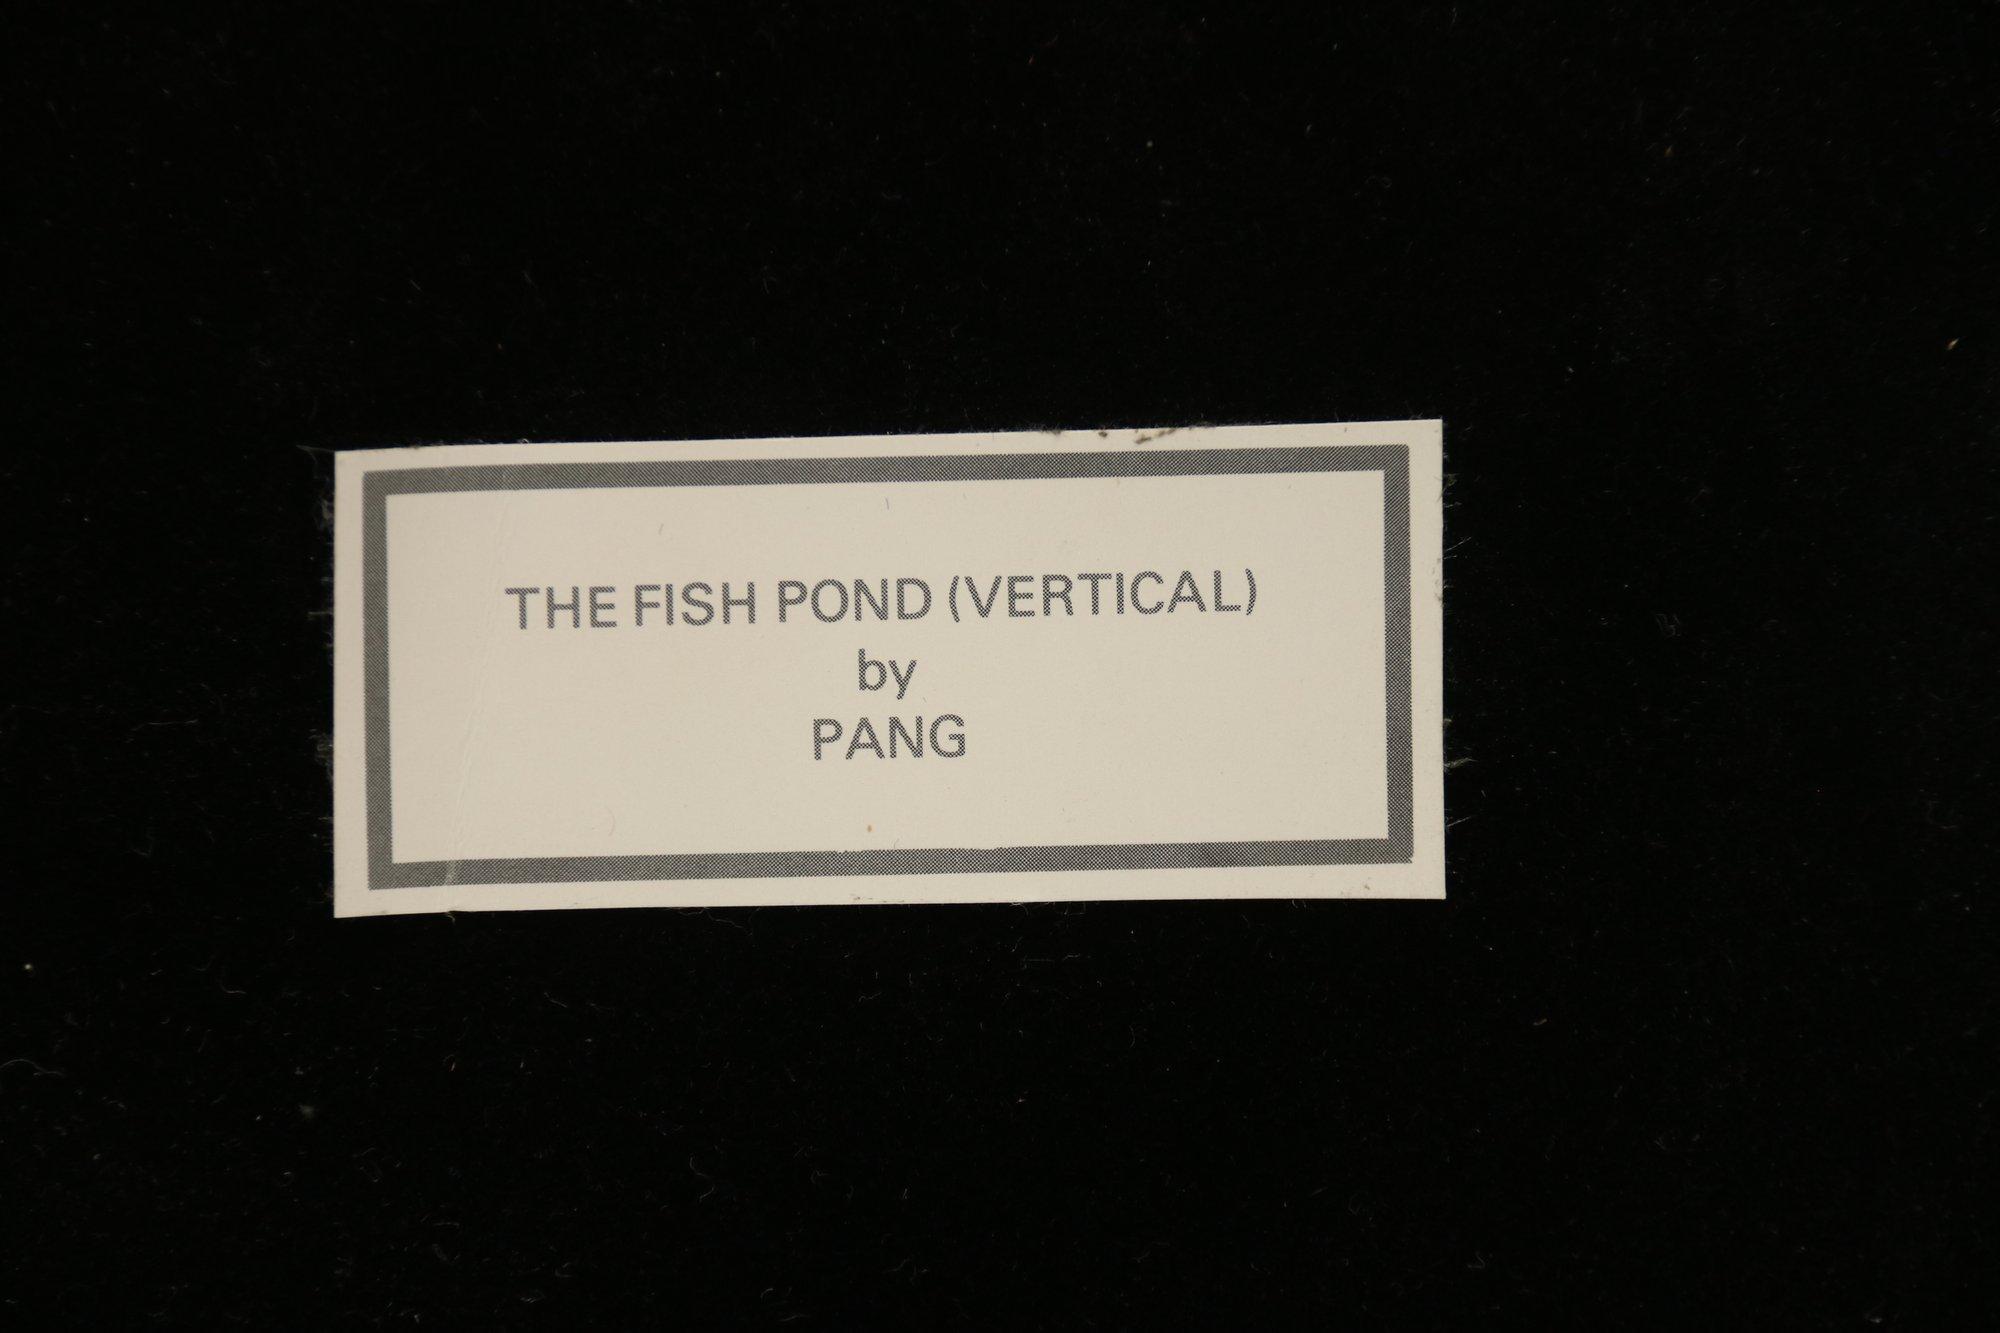 The Fish Pond By Tseng-Ying Pang